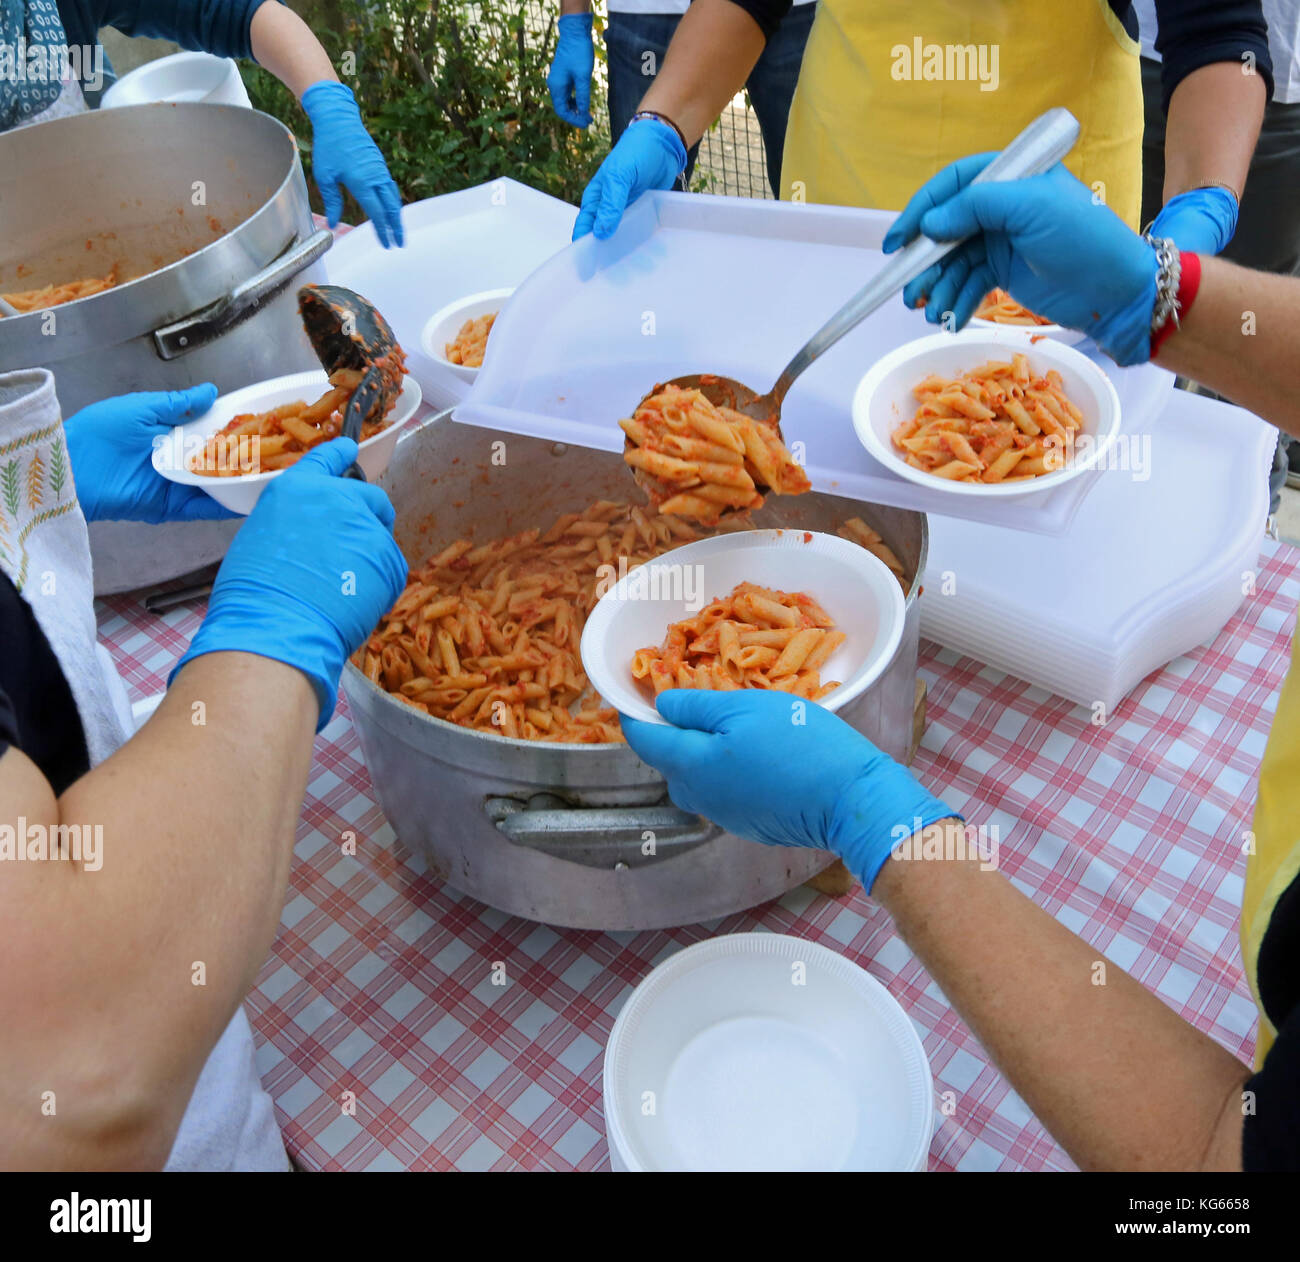 Le mani con guanti in lattice blu durante la distribuzione dei pasti con pasta e salsa di pomodoro in mensa Foto Stock